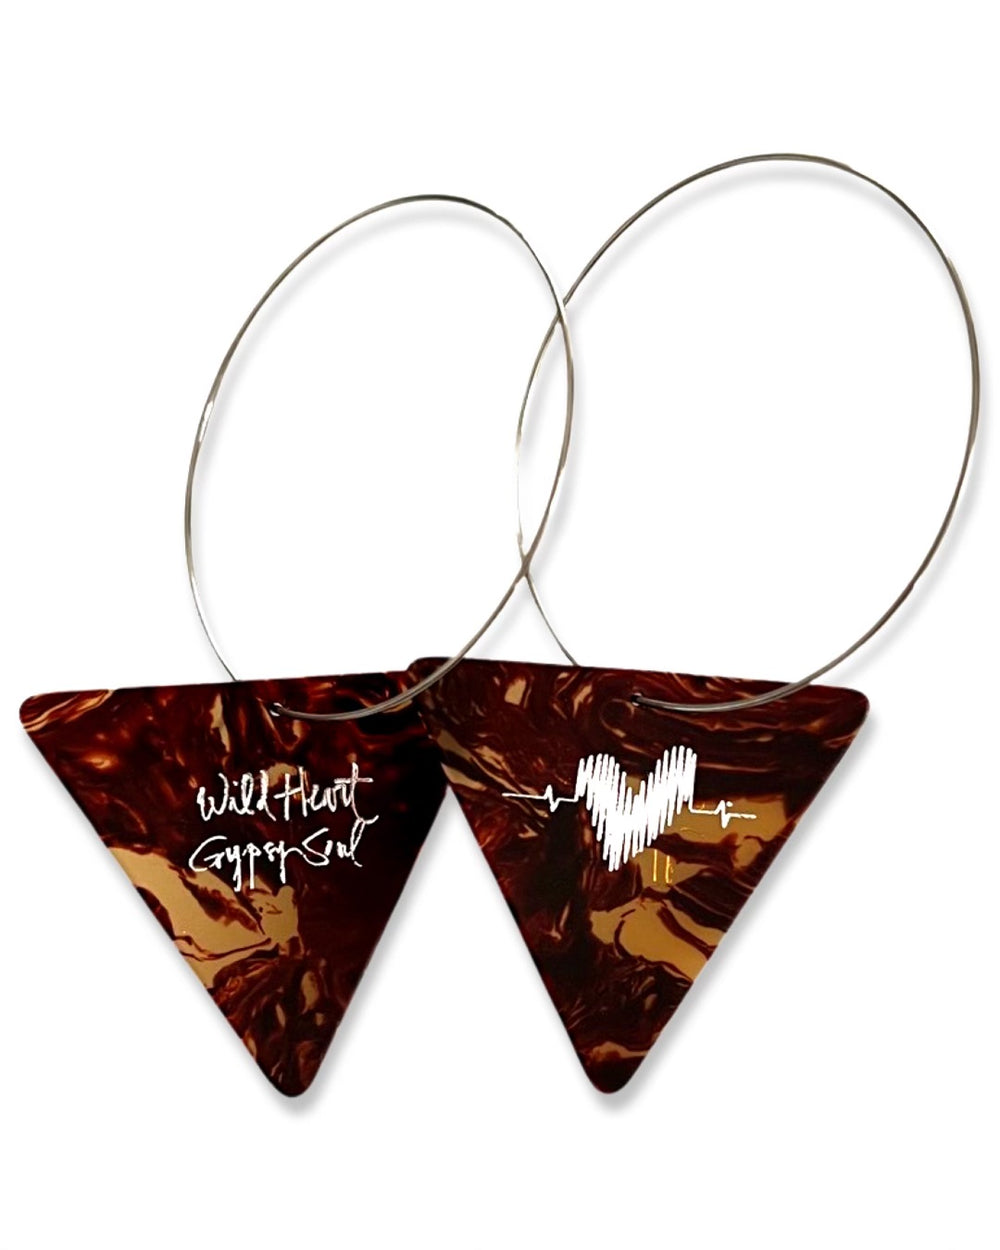 WS Wild Heart Gypsy Soul Tortoise Triangle Reversible Single Guitar Pick Earrings